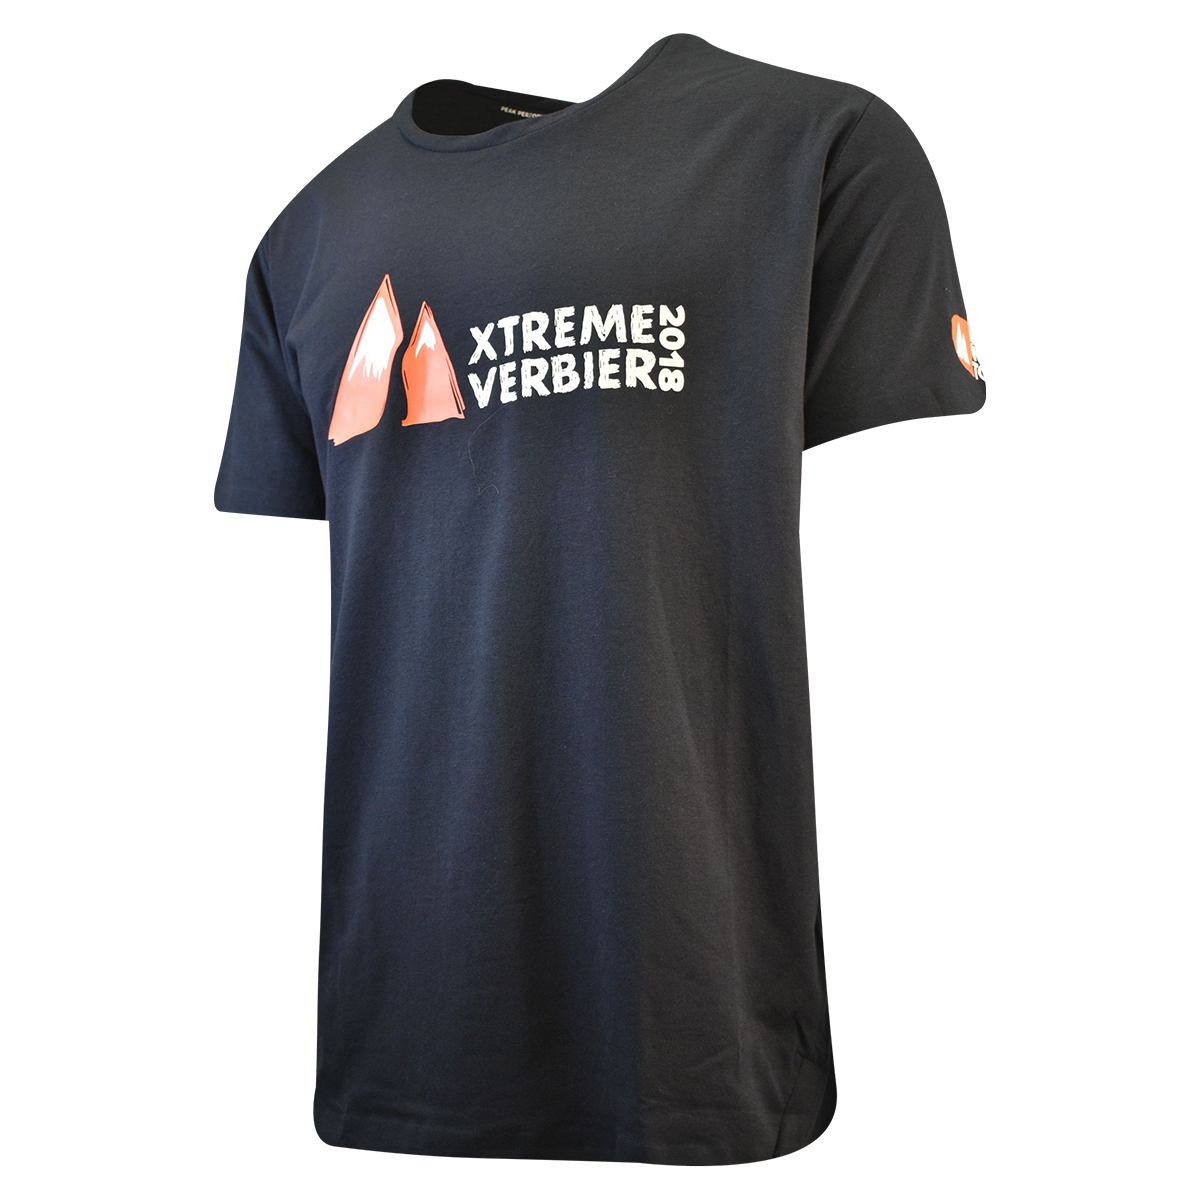 Peak Performance Men's T-Shirt Black Xtreme Verbier S/S (S05)